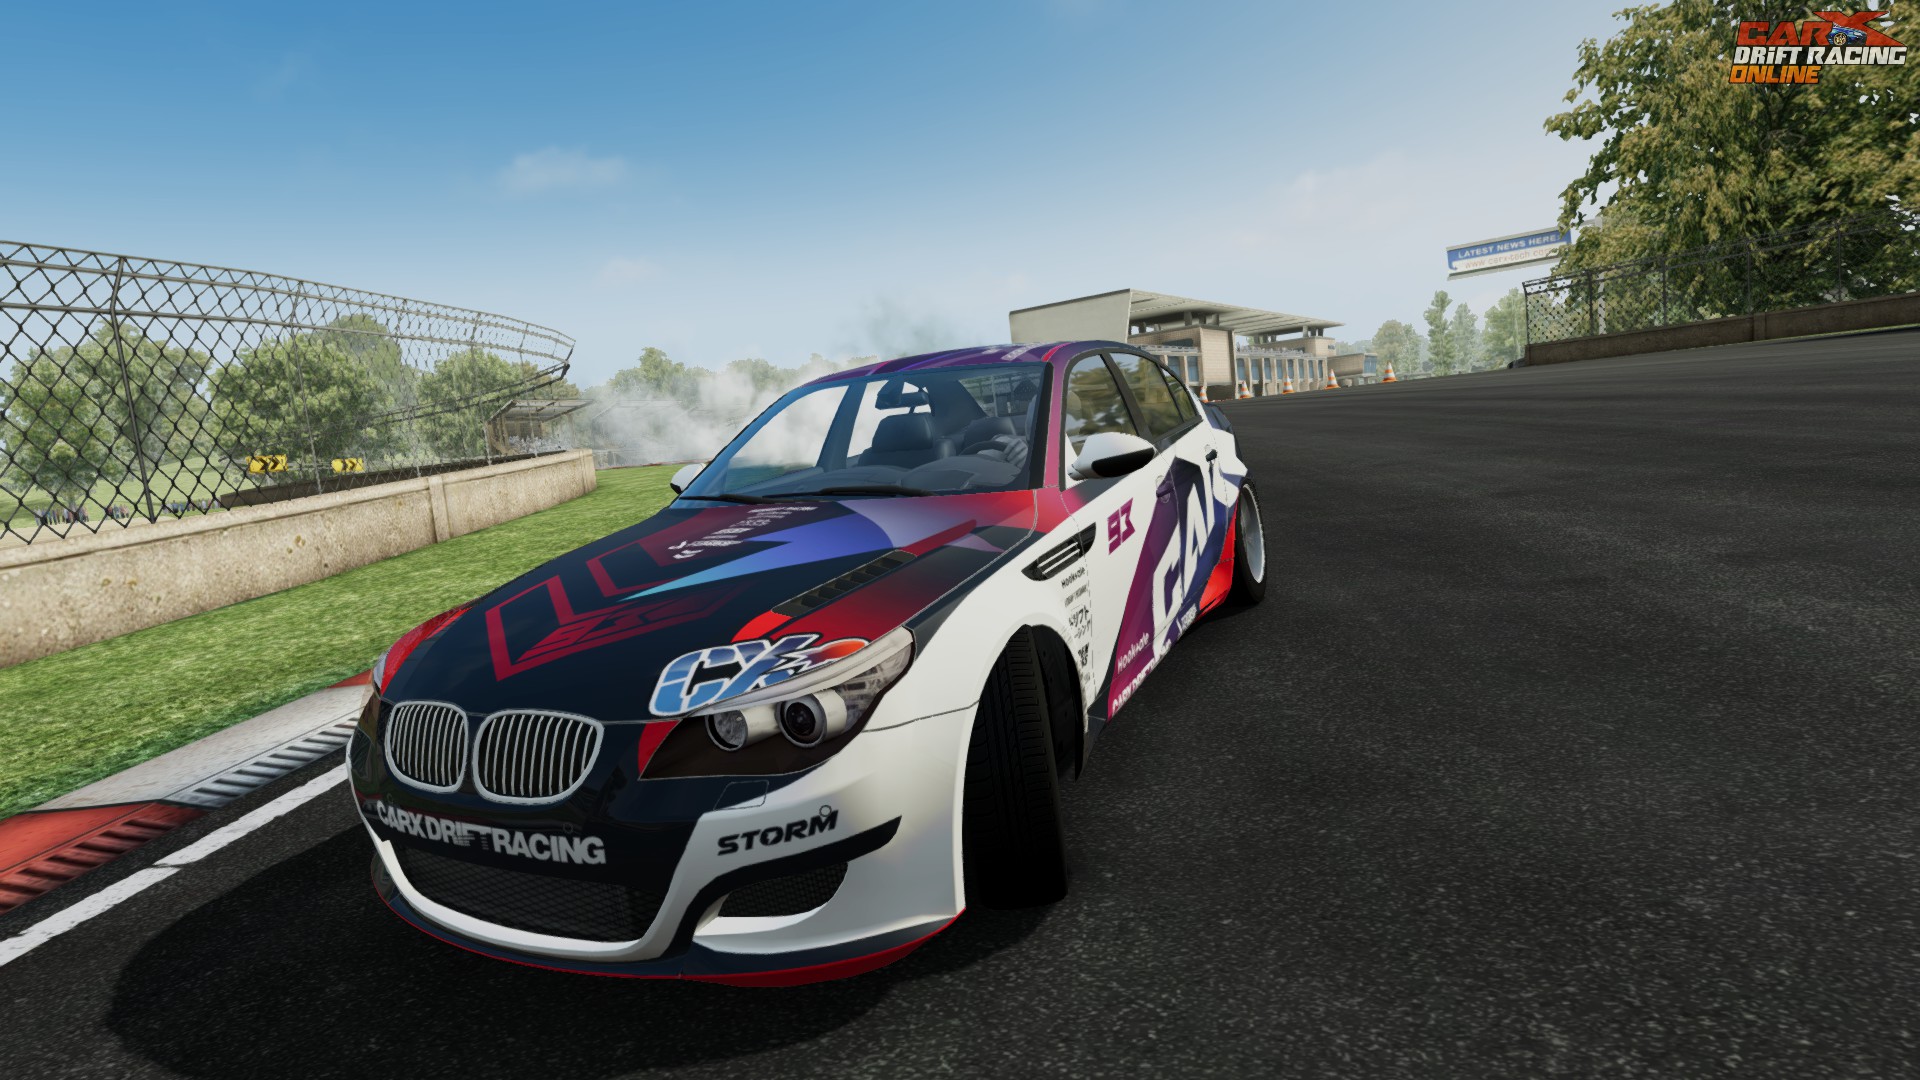 Mengulik Carx Drift Racing 2 Mod Apk Terbaru